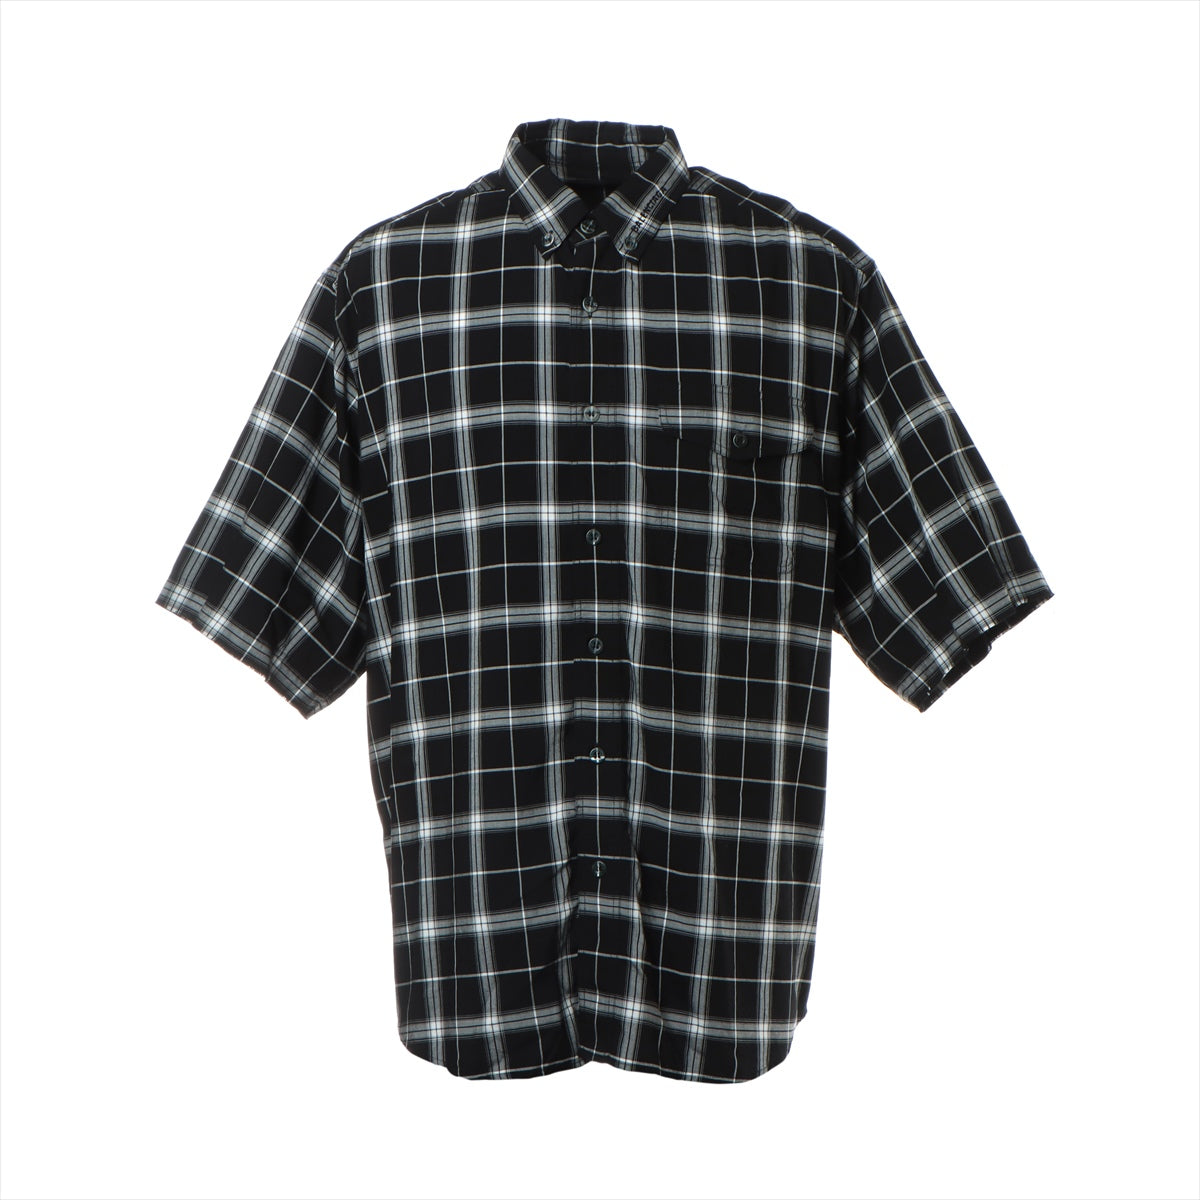 バレンシアガ 18AW レーヨン シャツ 38 メンズ ブラック×ホワイト  ネックロゴ 半袖 オーバーサイズ